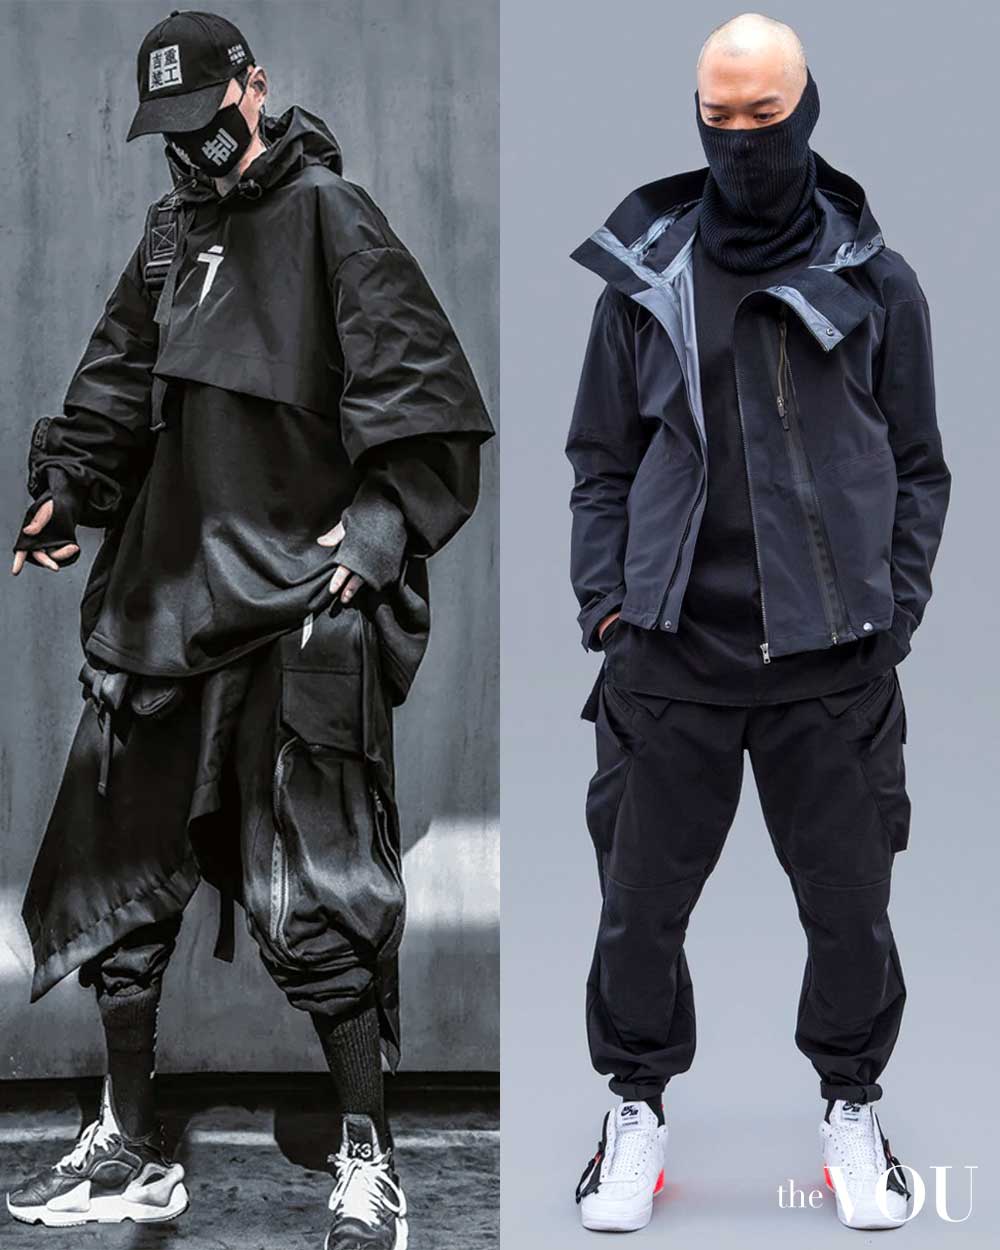 Cyberpunk techwear by Y-3 and ACRONYM